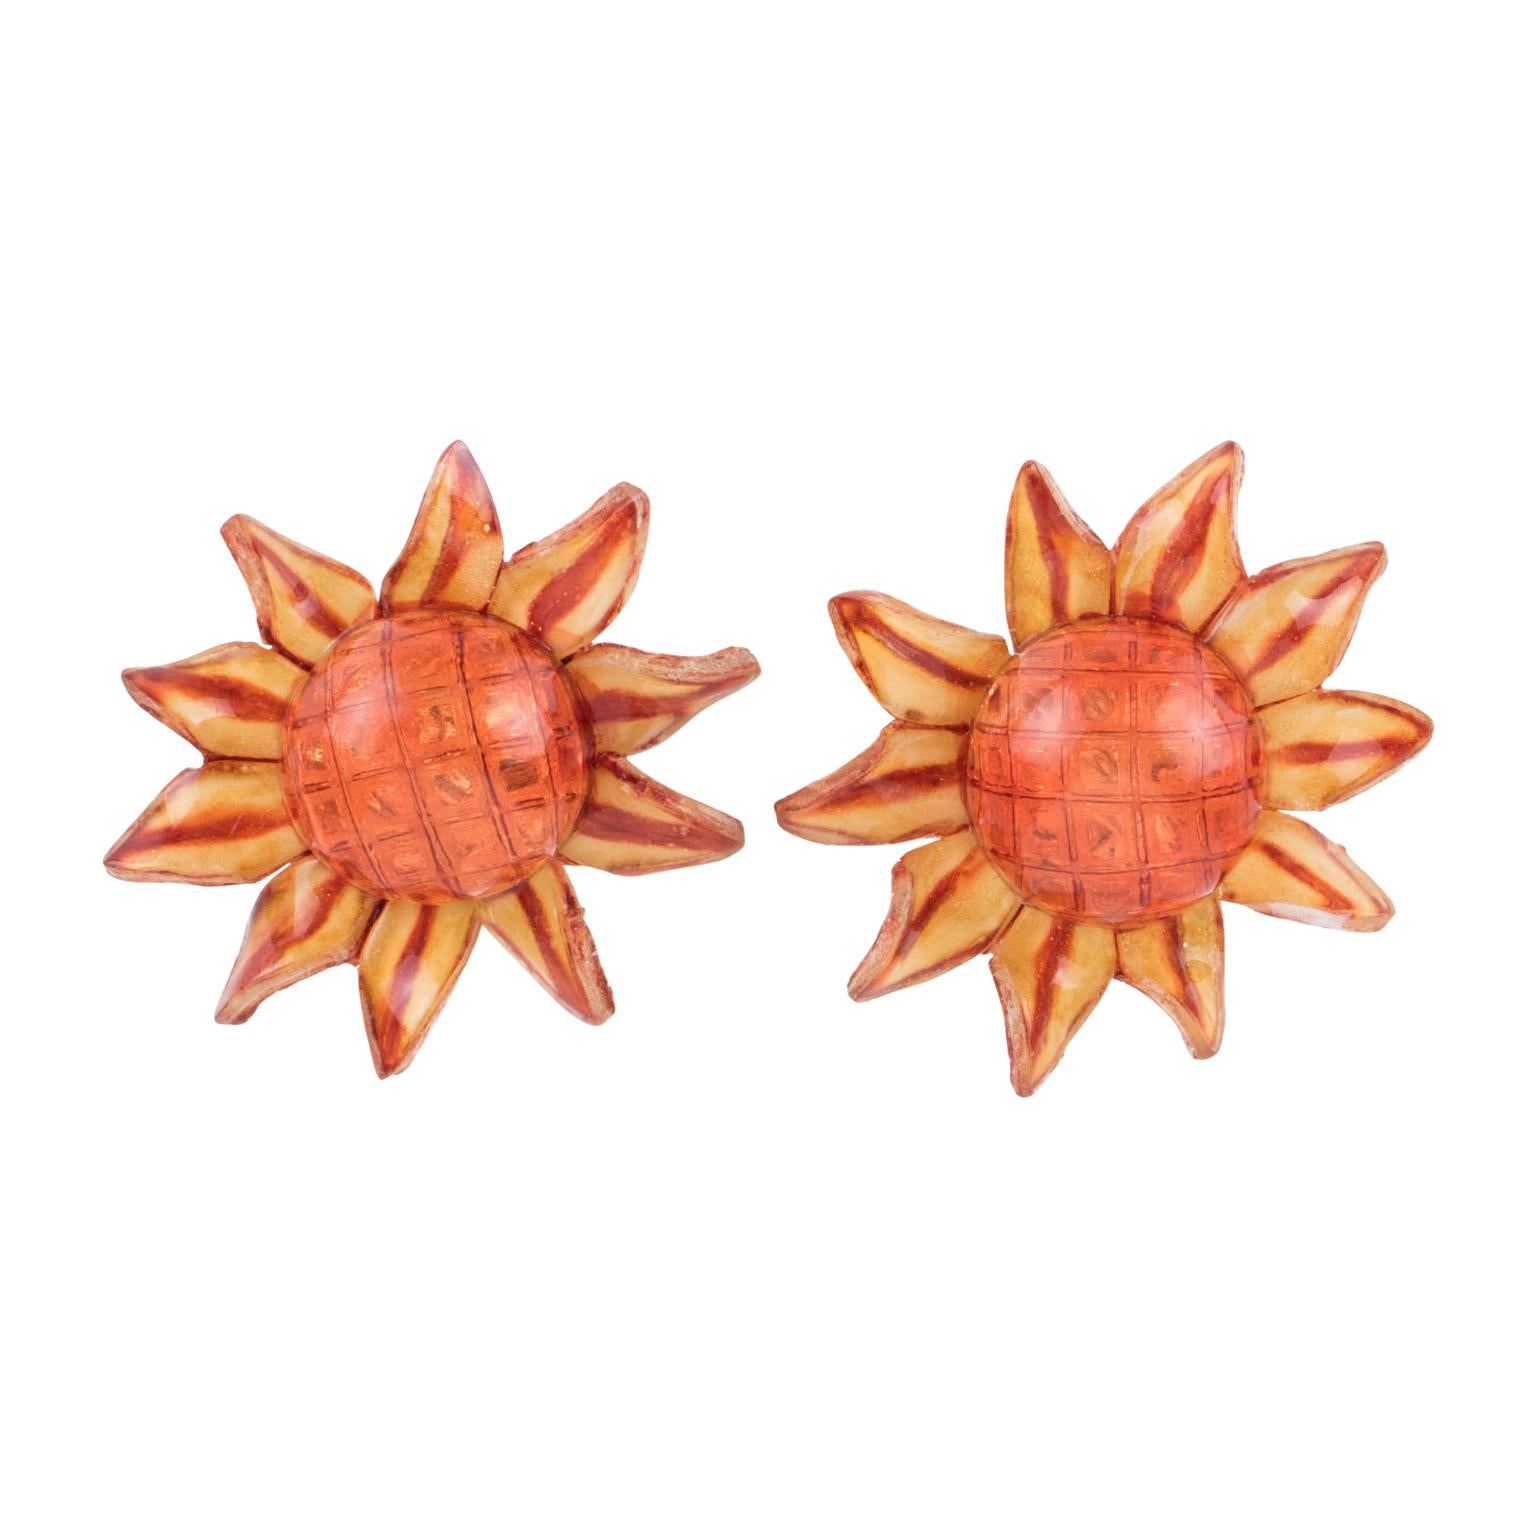 Francoise Montague by Cilea Resin Clip Earrings Orange Daisy Flower